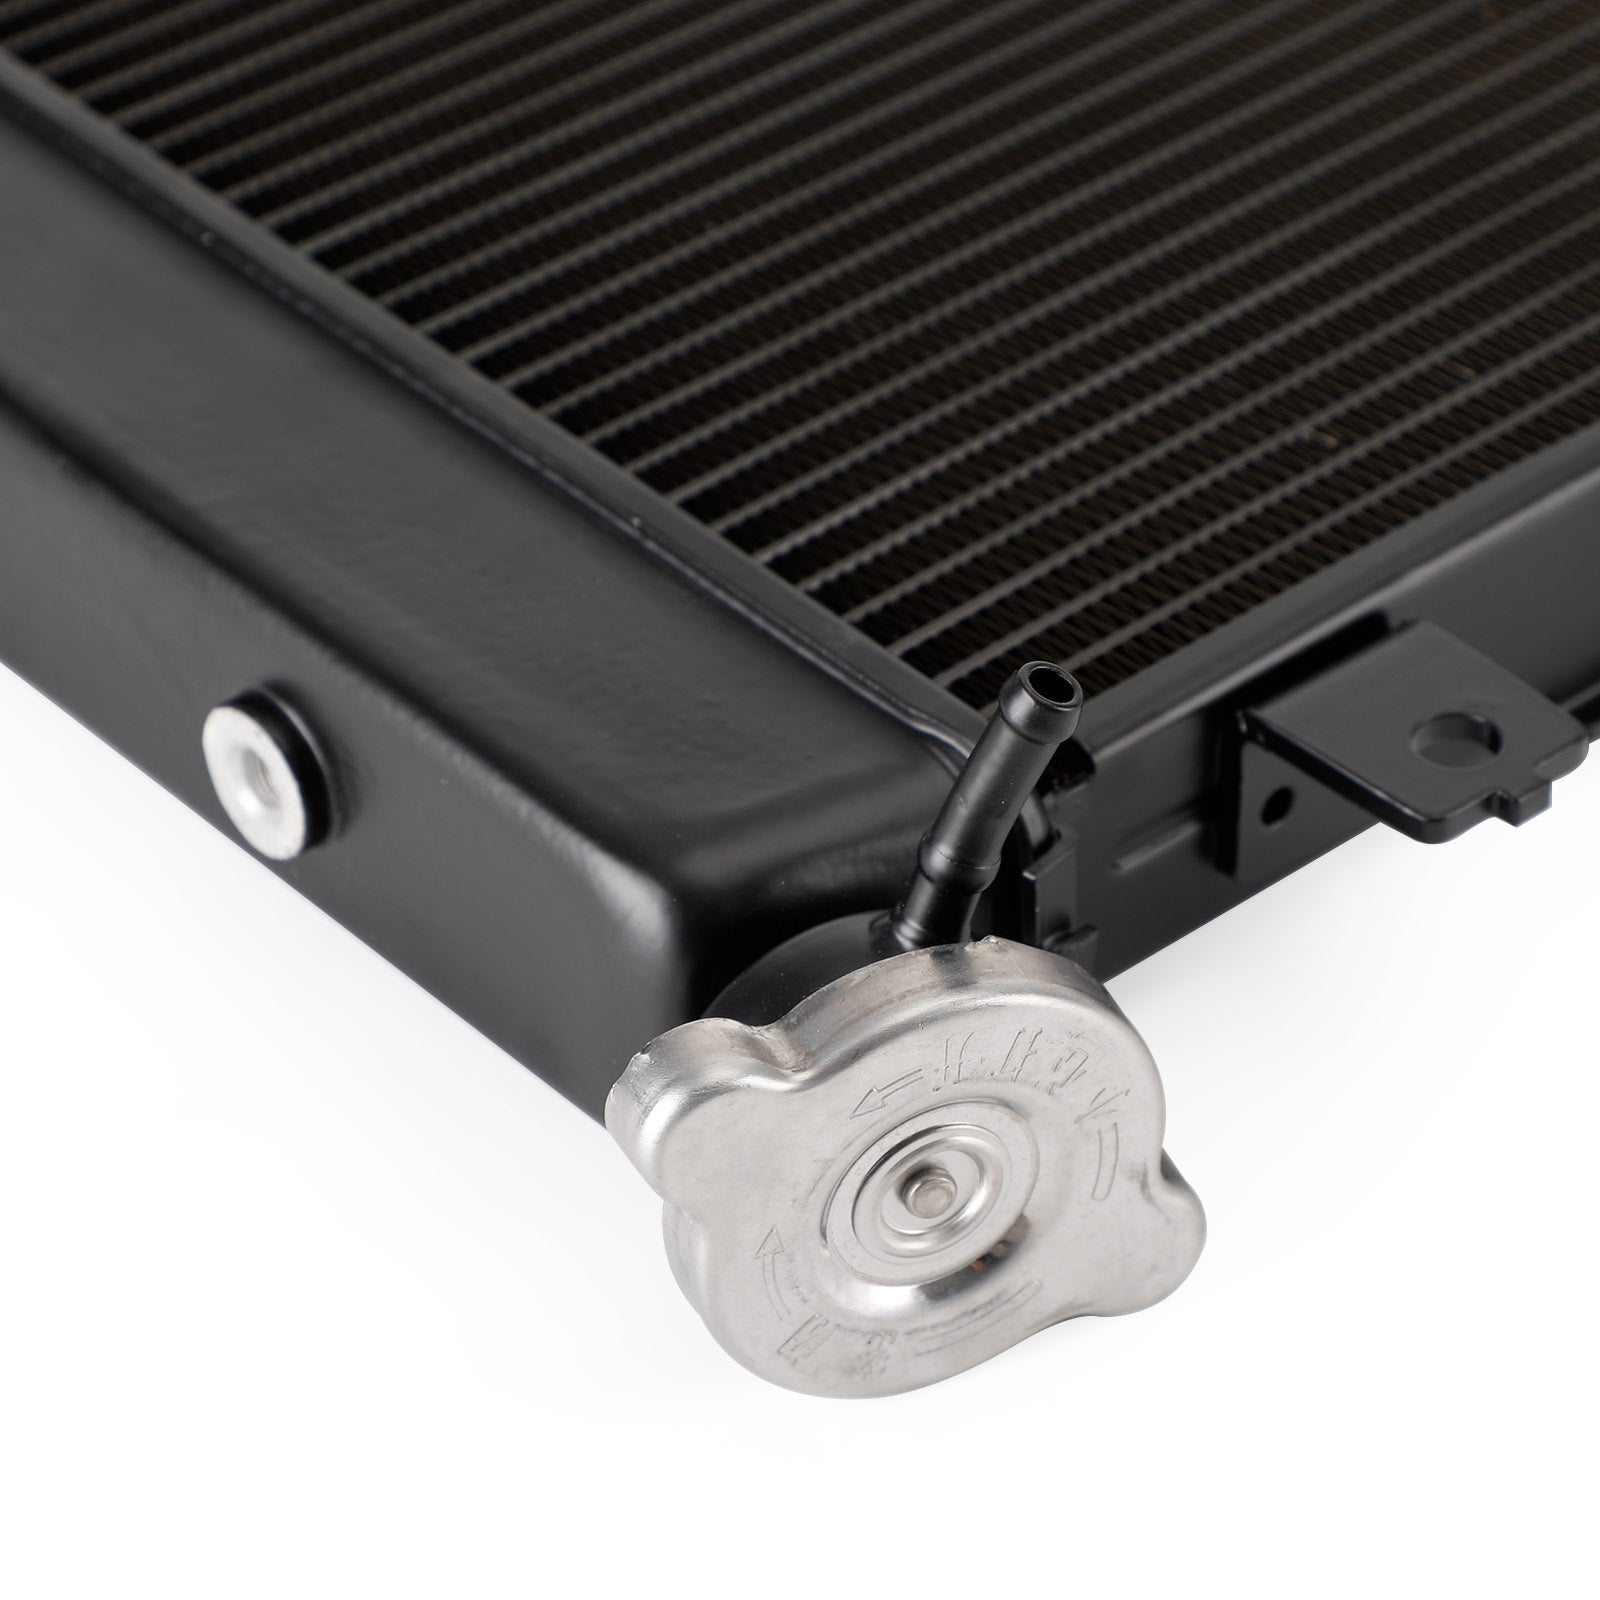 Raffreddamento del radiatore del motore in alluminio adatto per Honda CBR650R 2019-2022